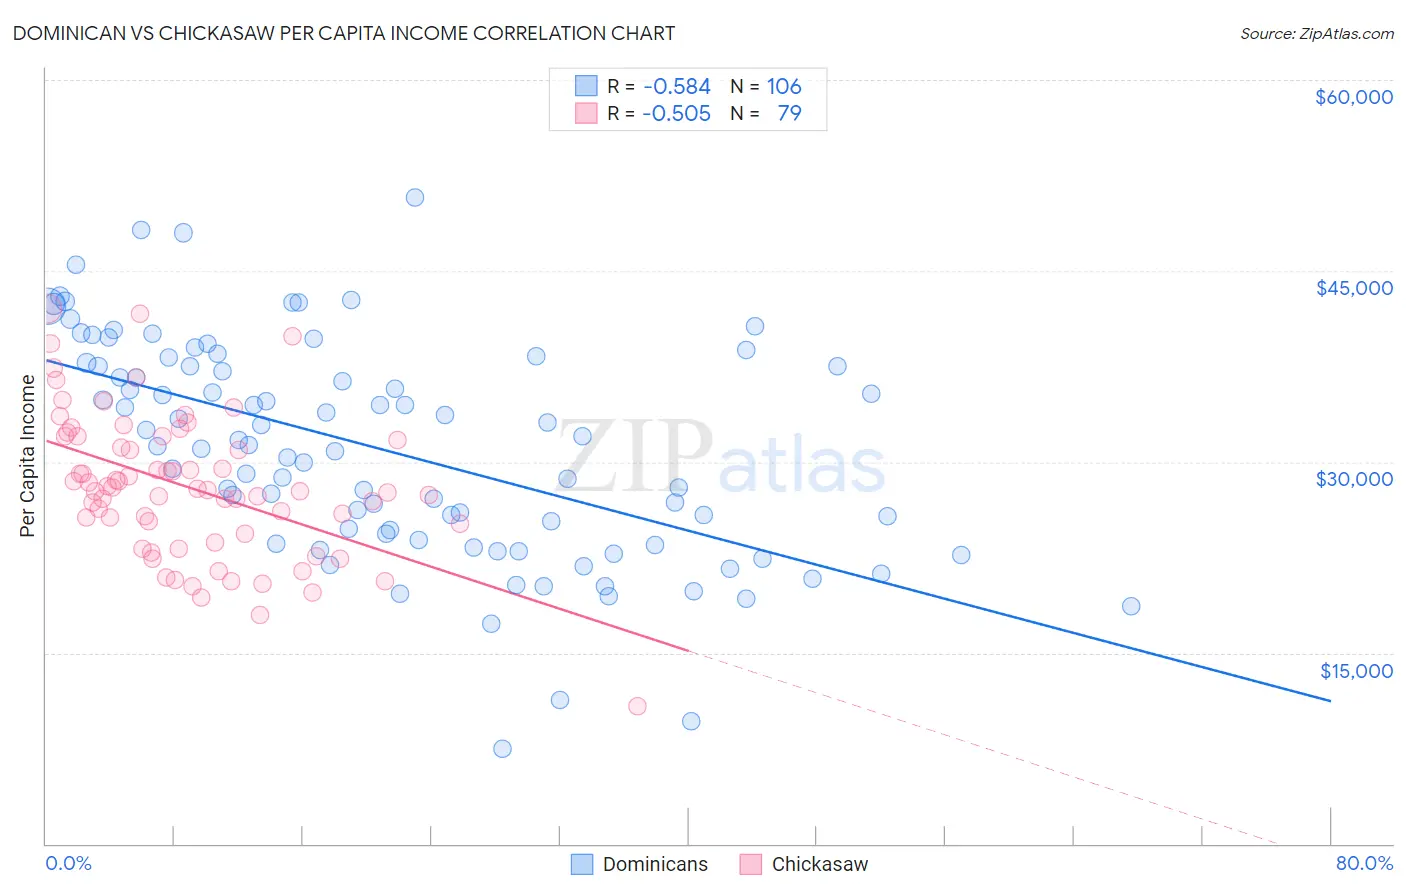 Dominican vs Chickasaw Per Capita Income